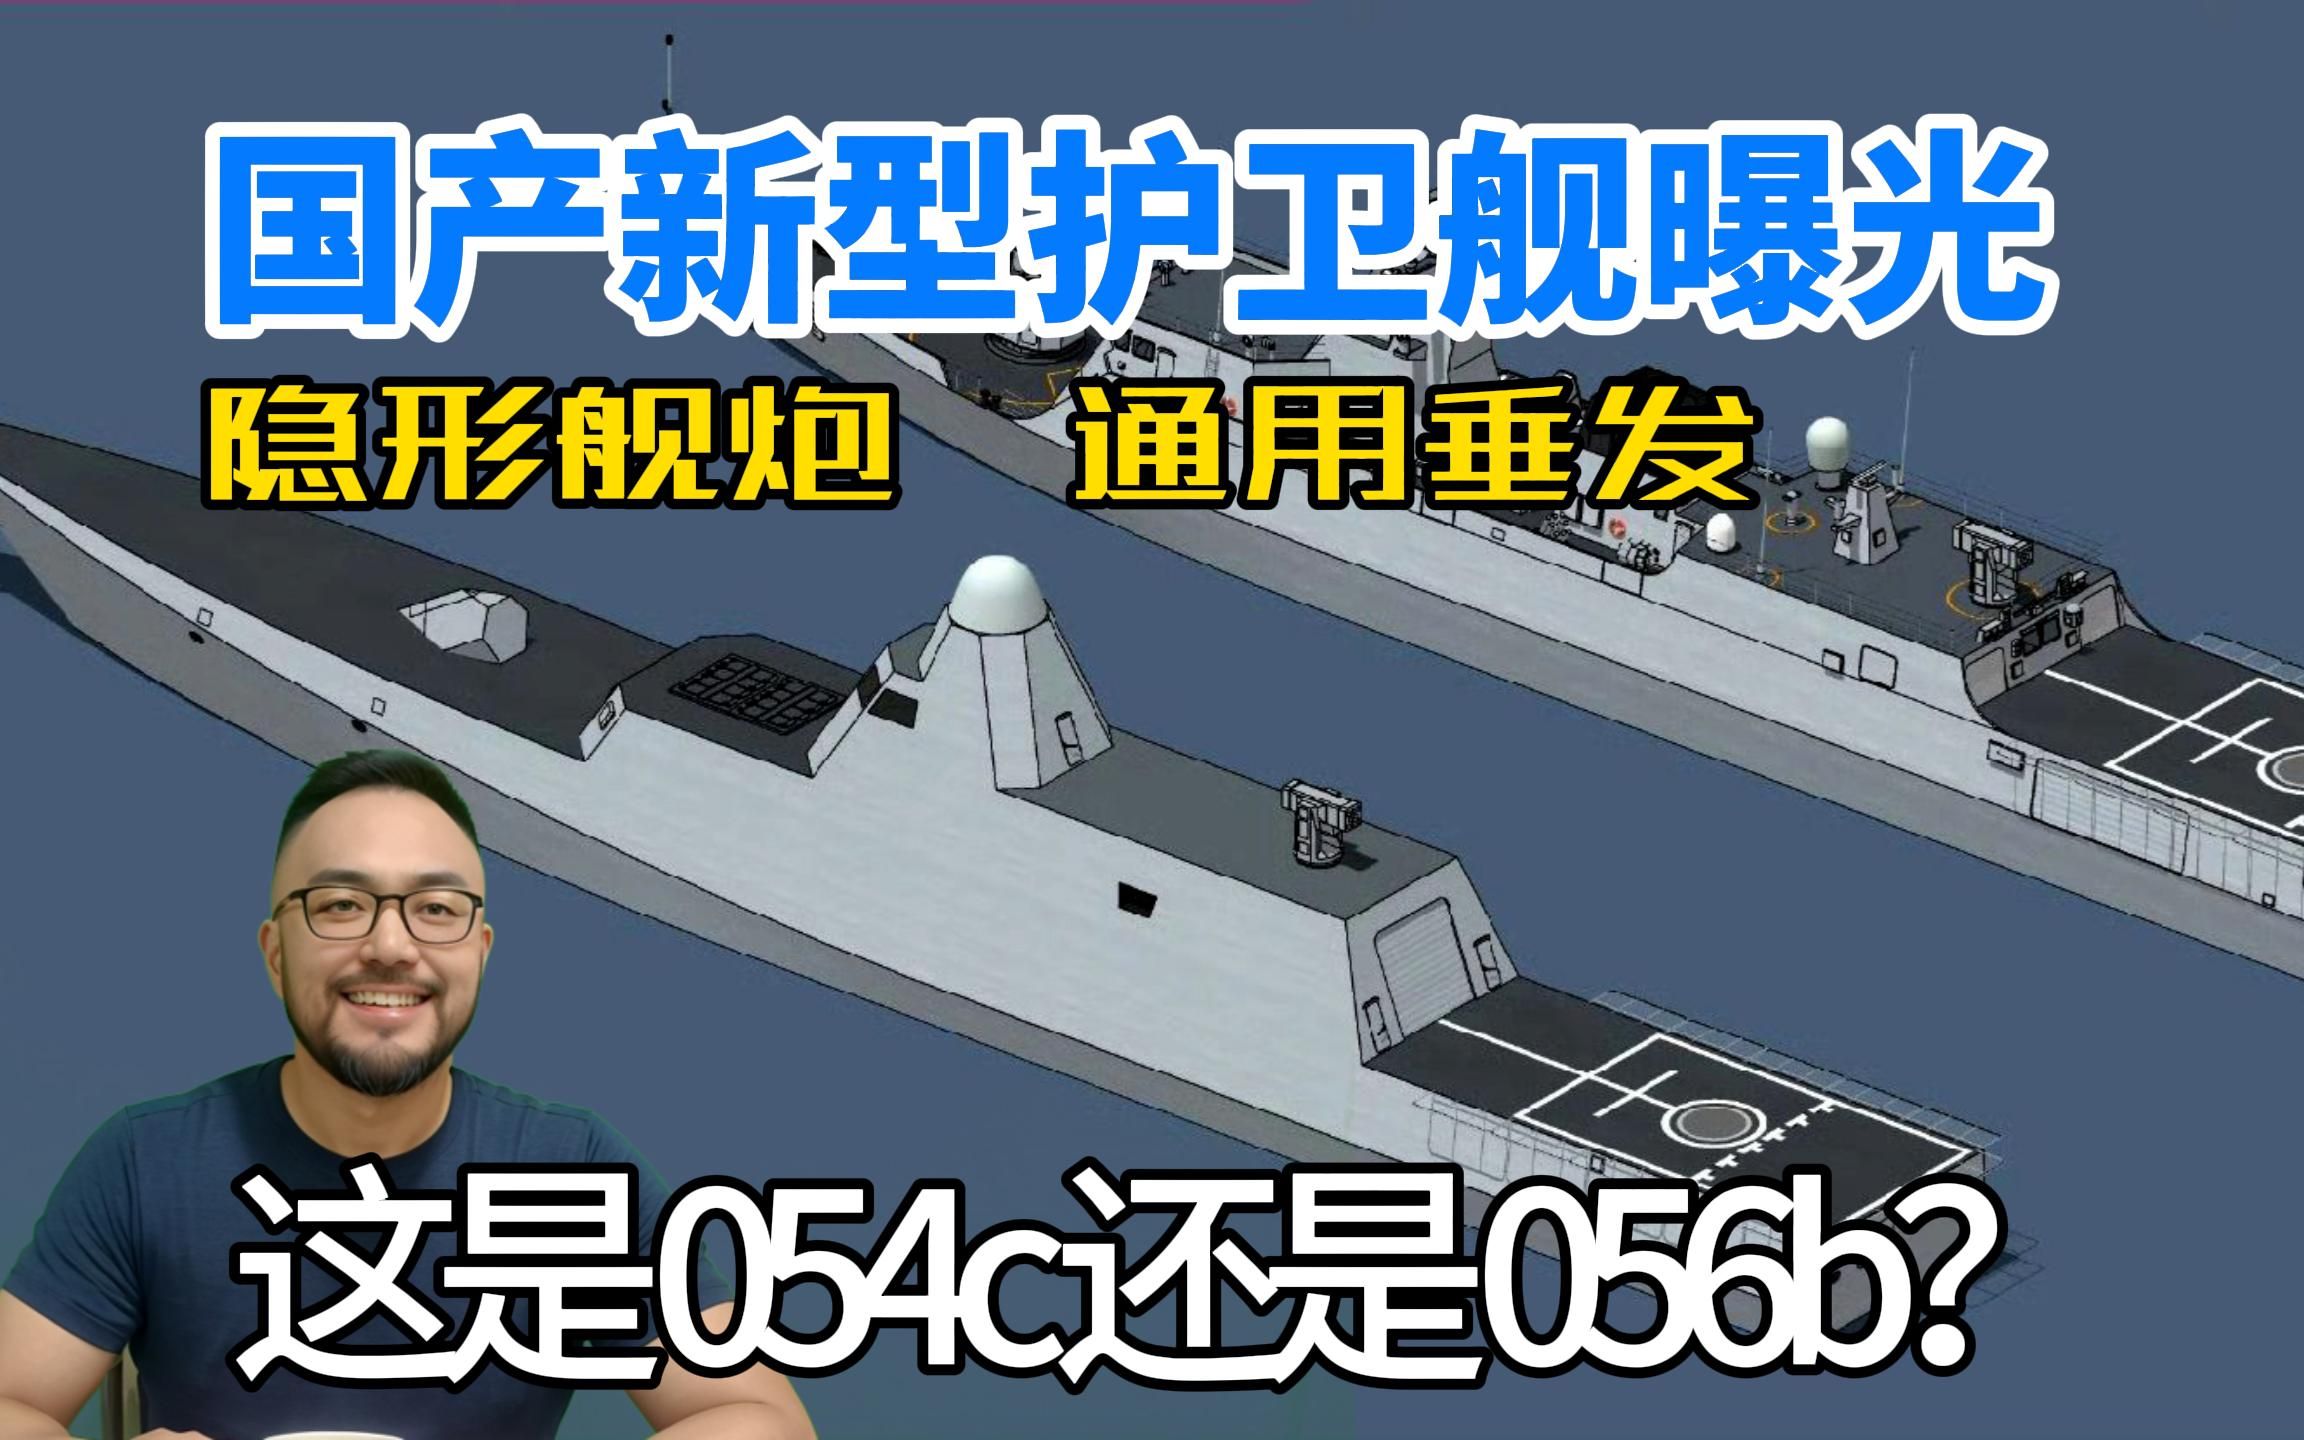 国产新型护卫舰曝光，这是054c还是056b？